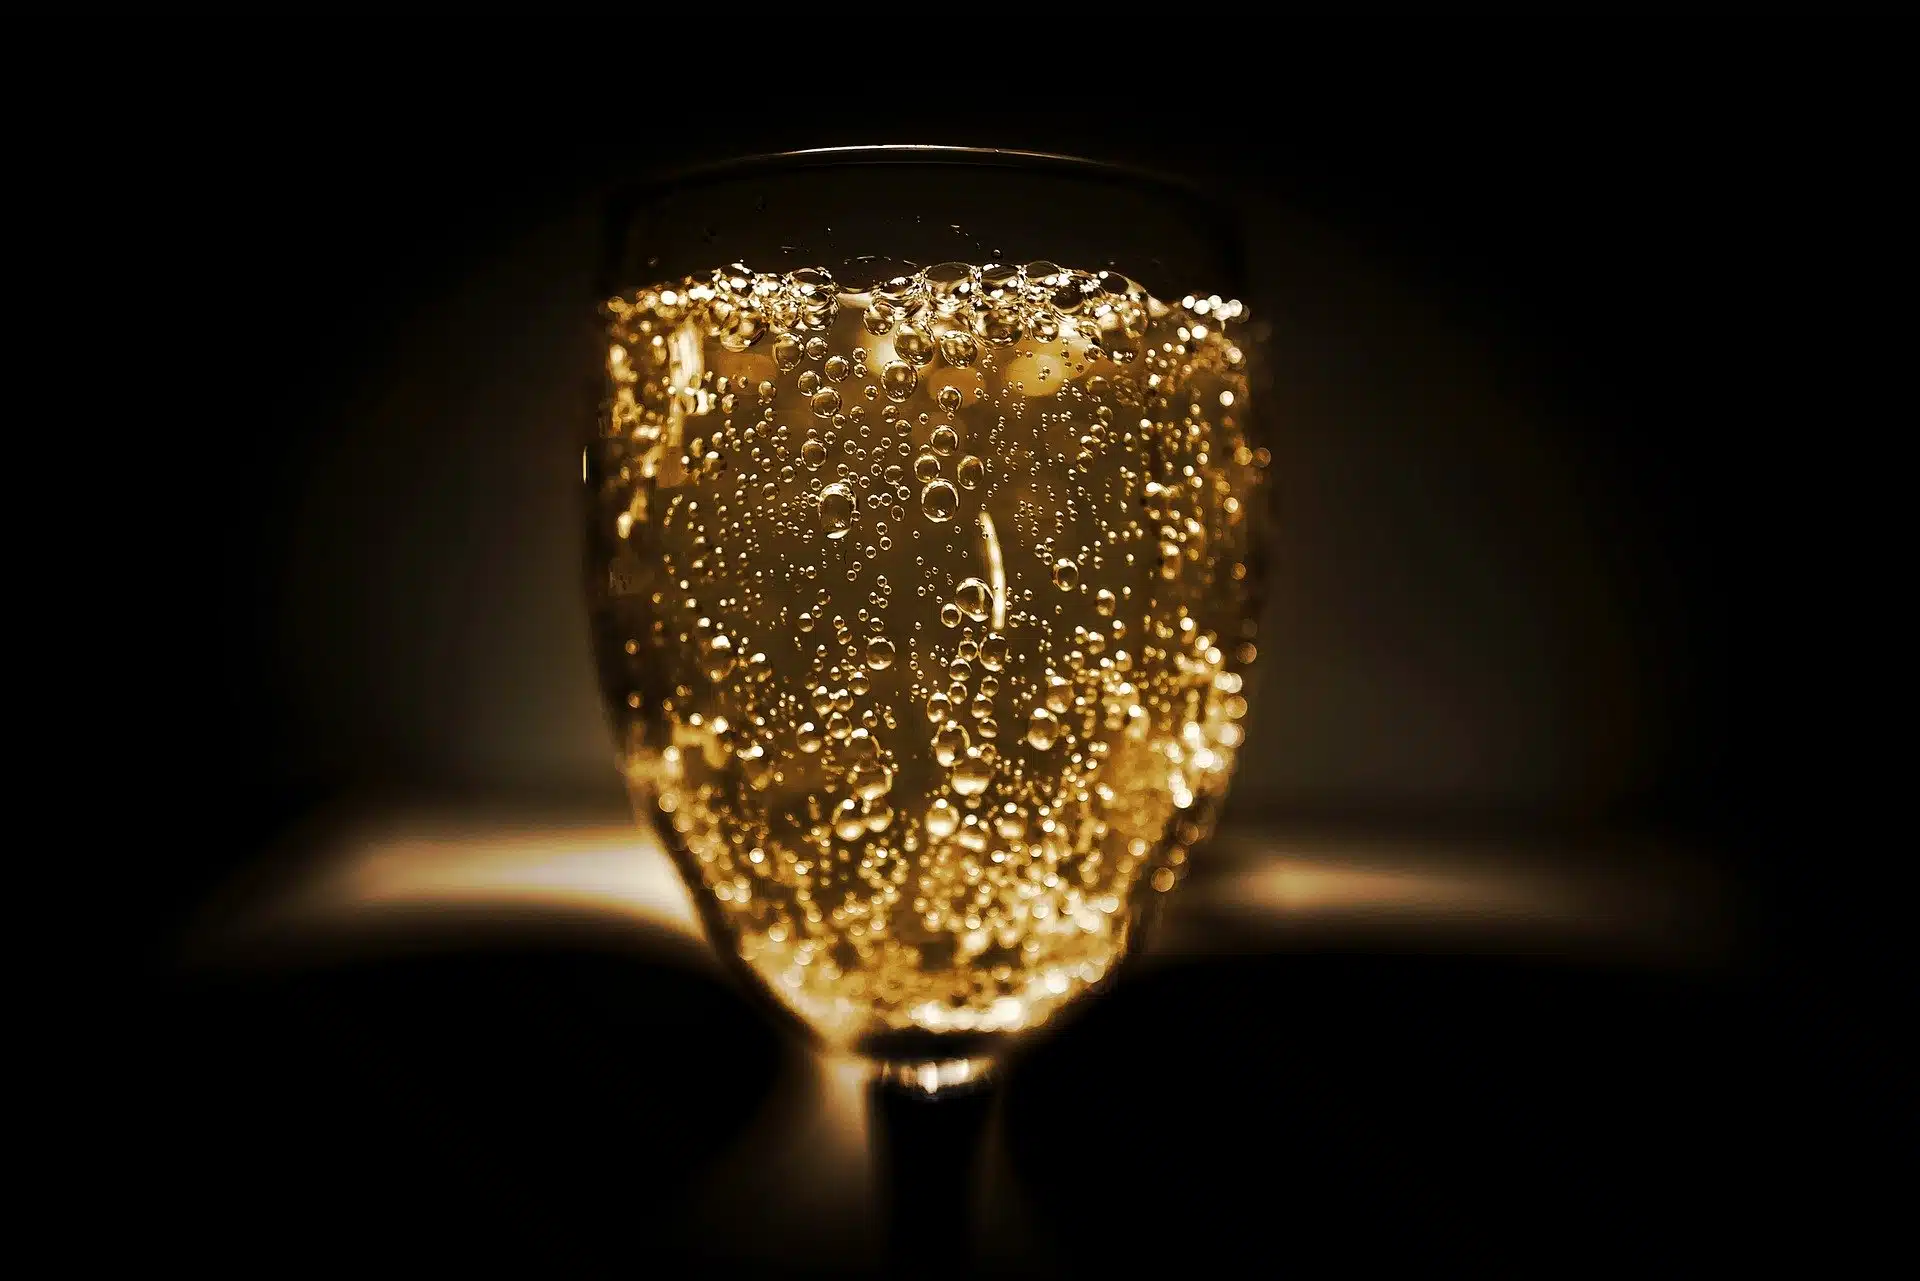 Pourquoi le champagne était une boisson dénigrée au Moyen-Âge ? question insolite